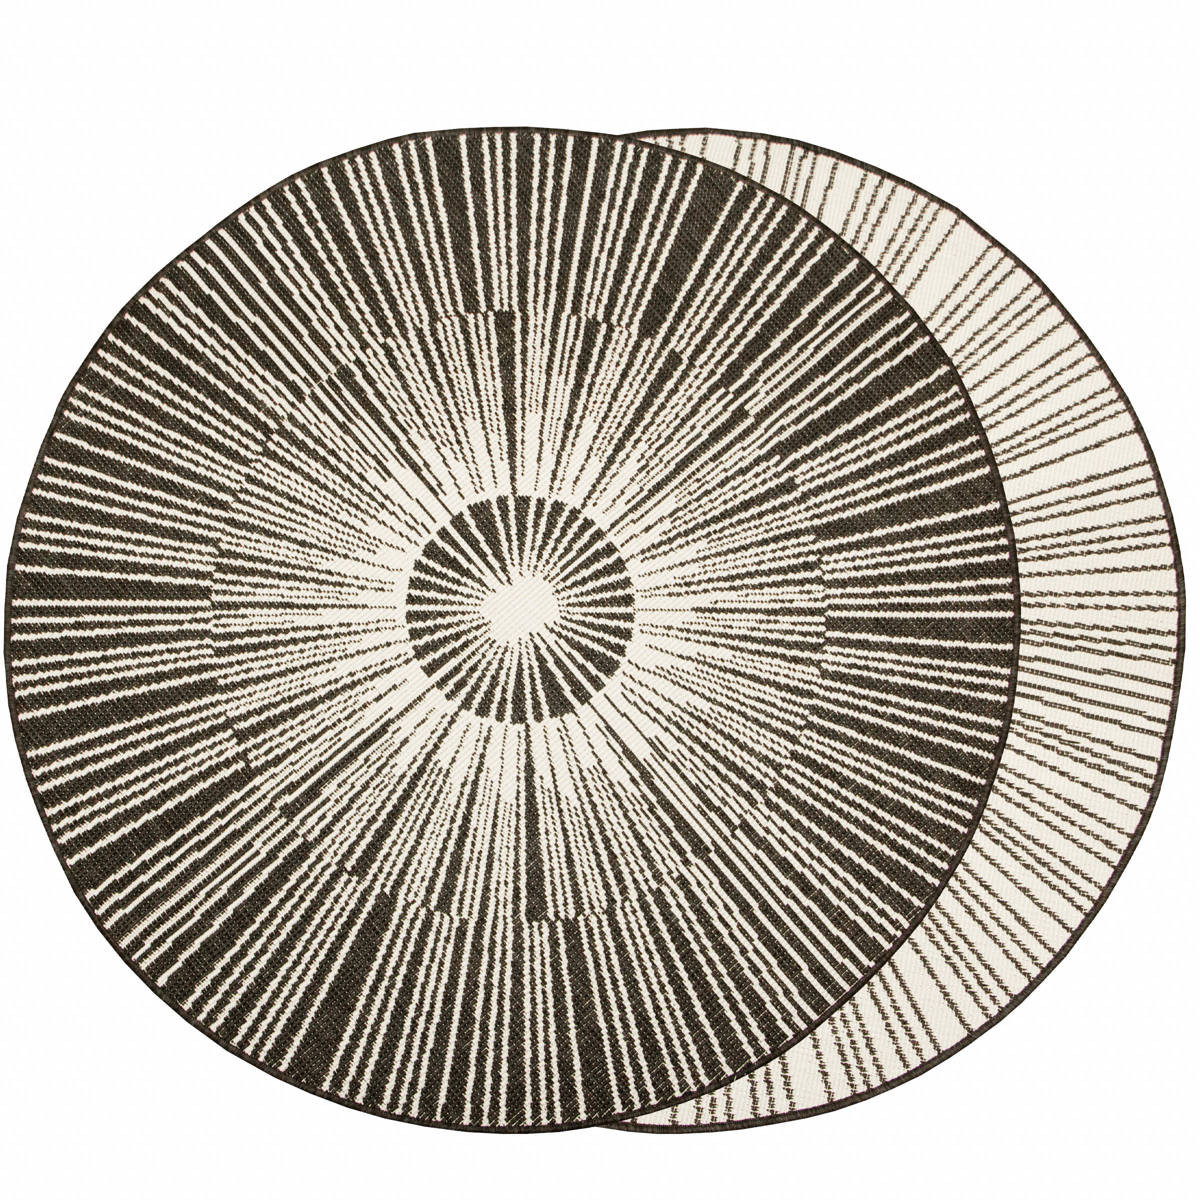 Šnúrkový obojstranný koberec Brussels 205634/10110 antrcitový / krémový kruh 